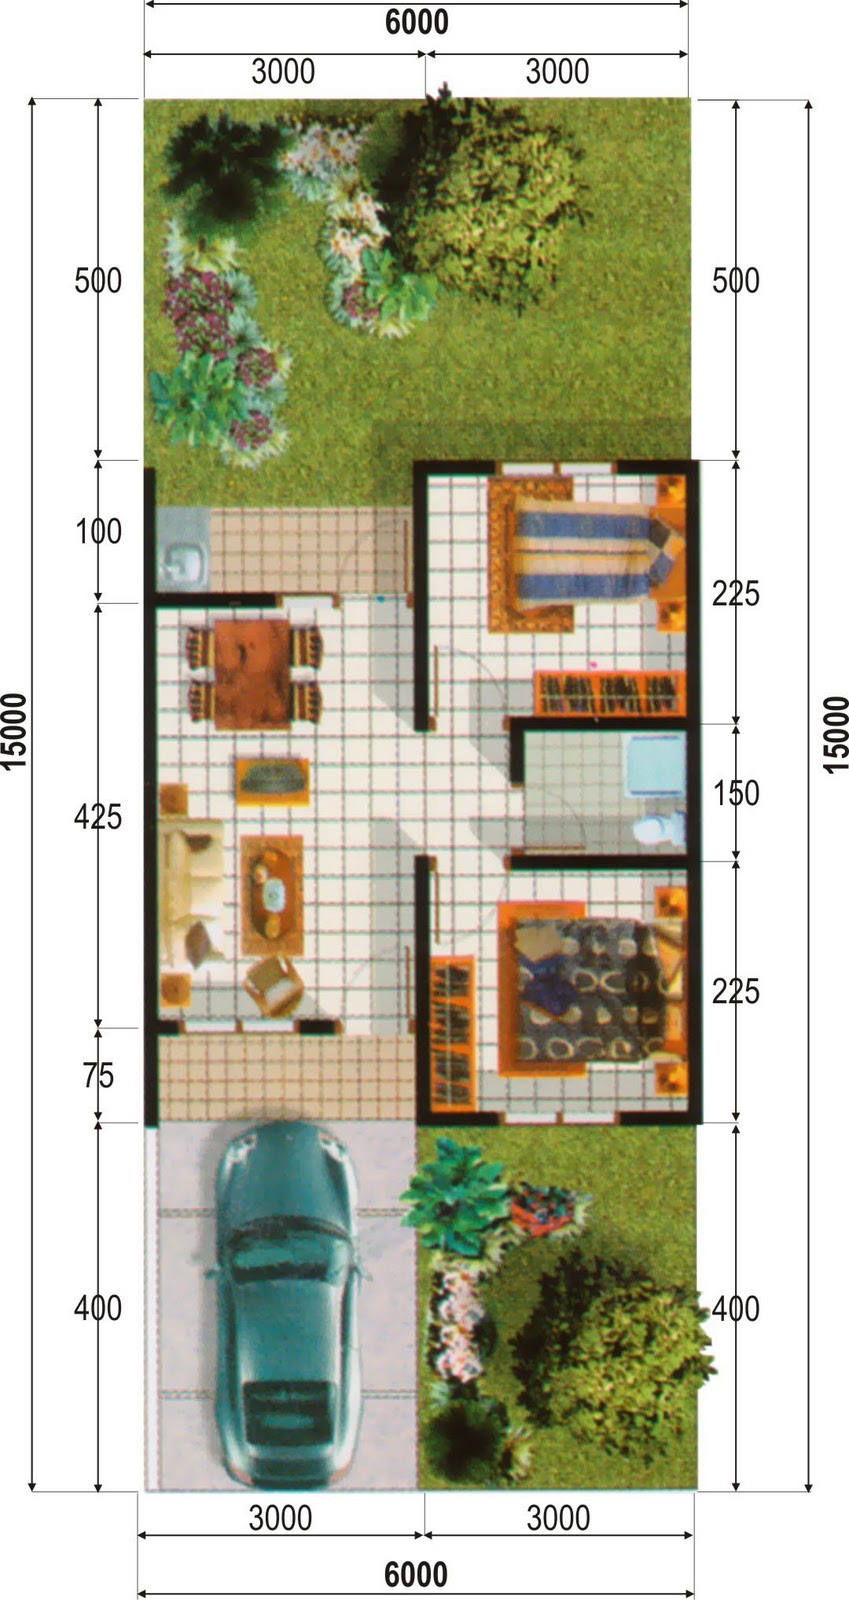 Desain Interior Rumah Minimalis Type 36 90 Desain Rumah Minimalis